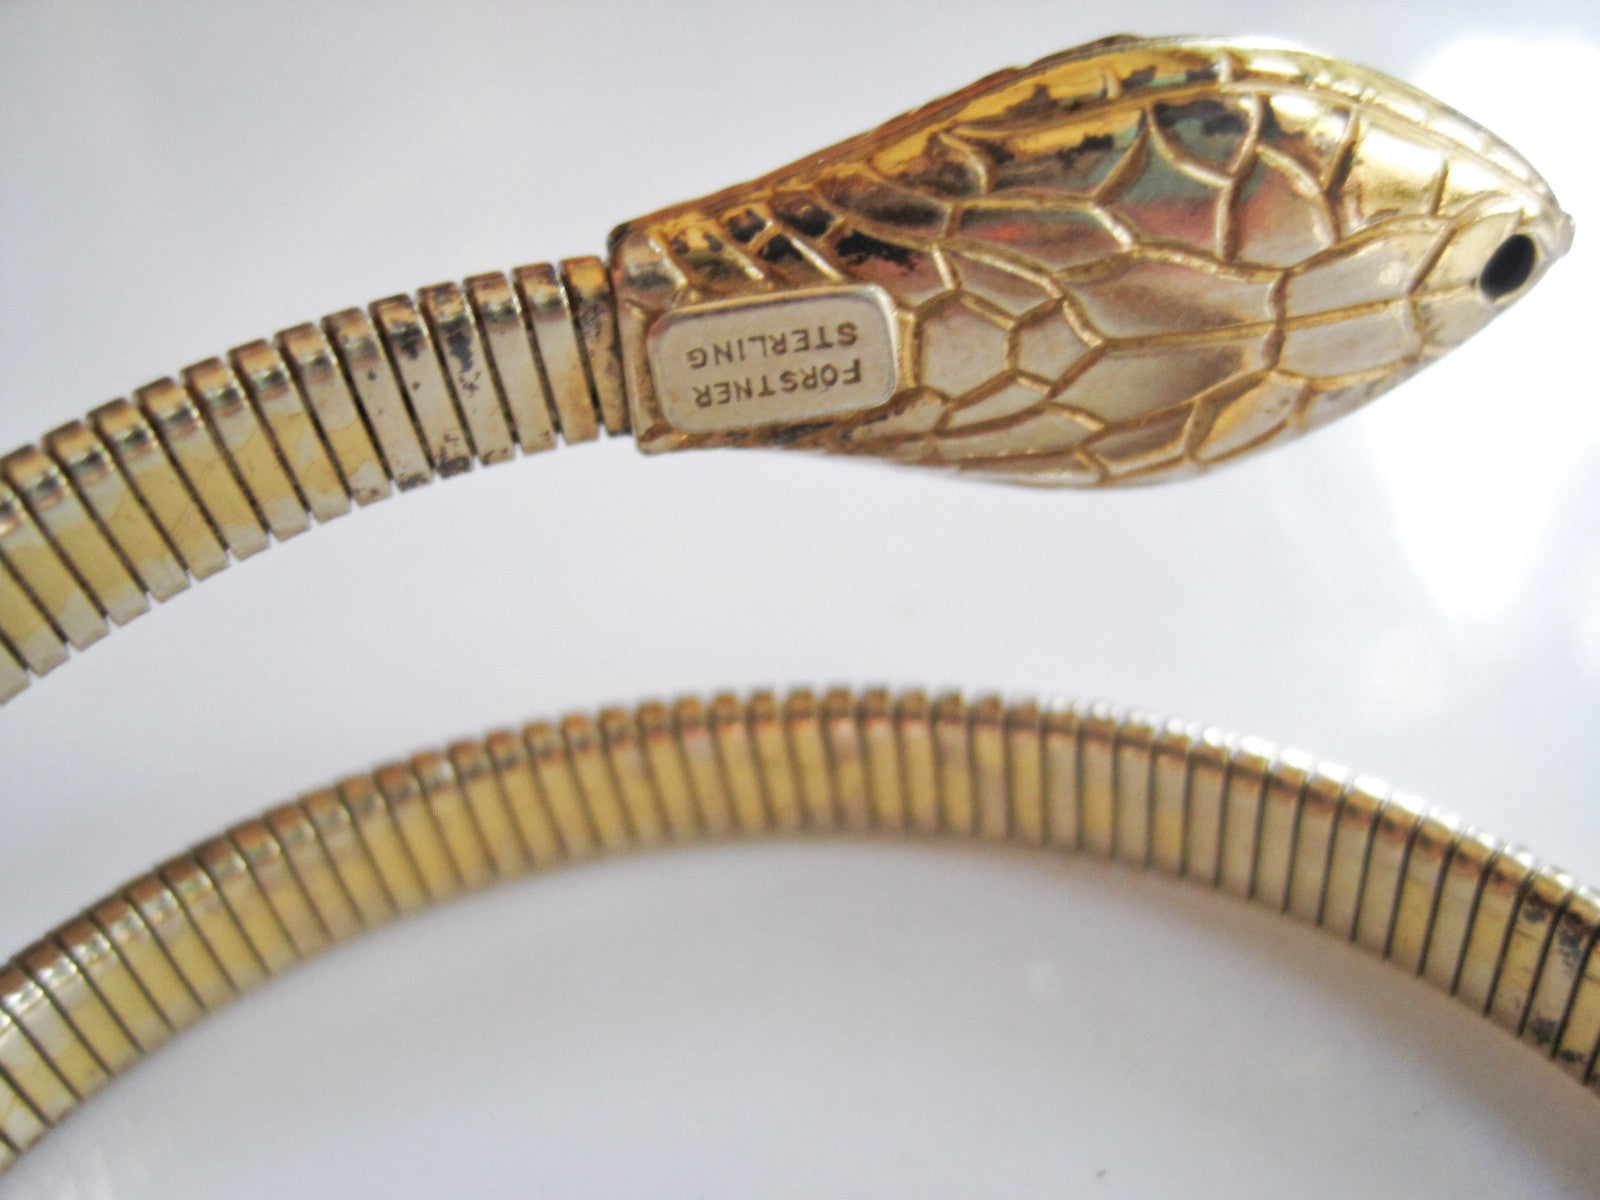 Vintage Rajasthan Indian Silver Snake Chain Bracelet - 25 grams 7 Length